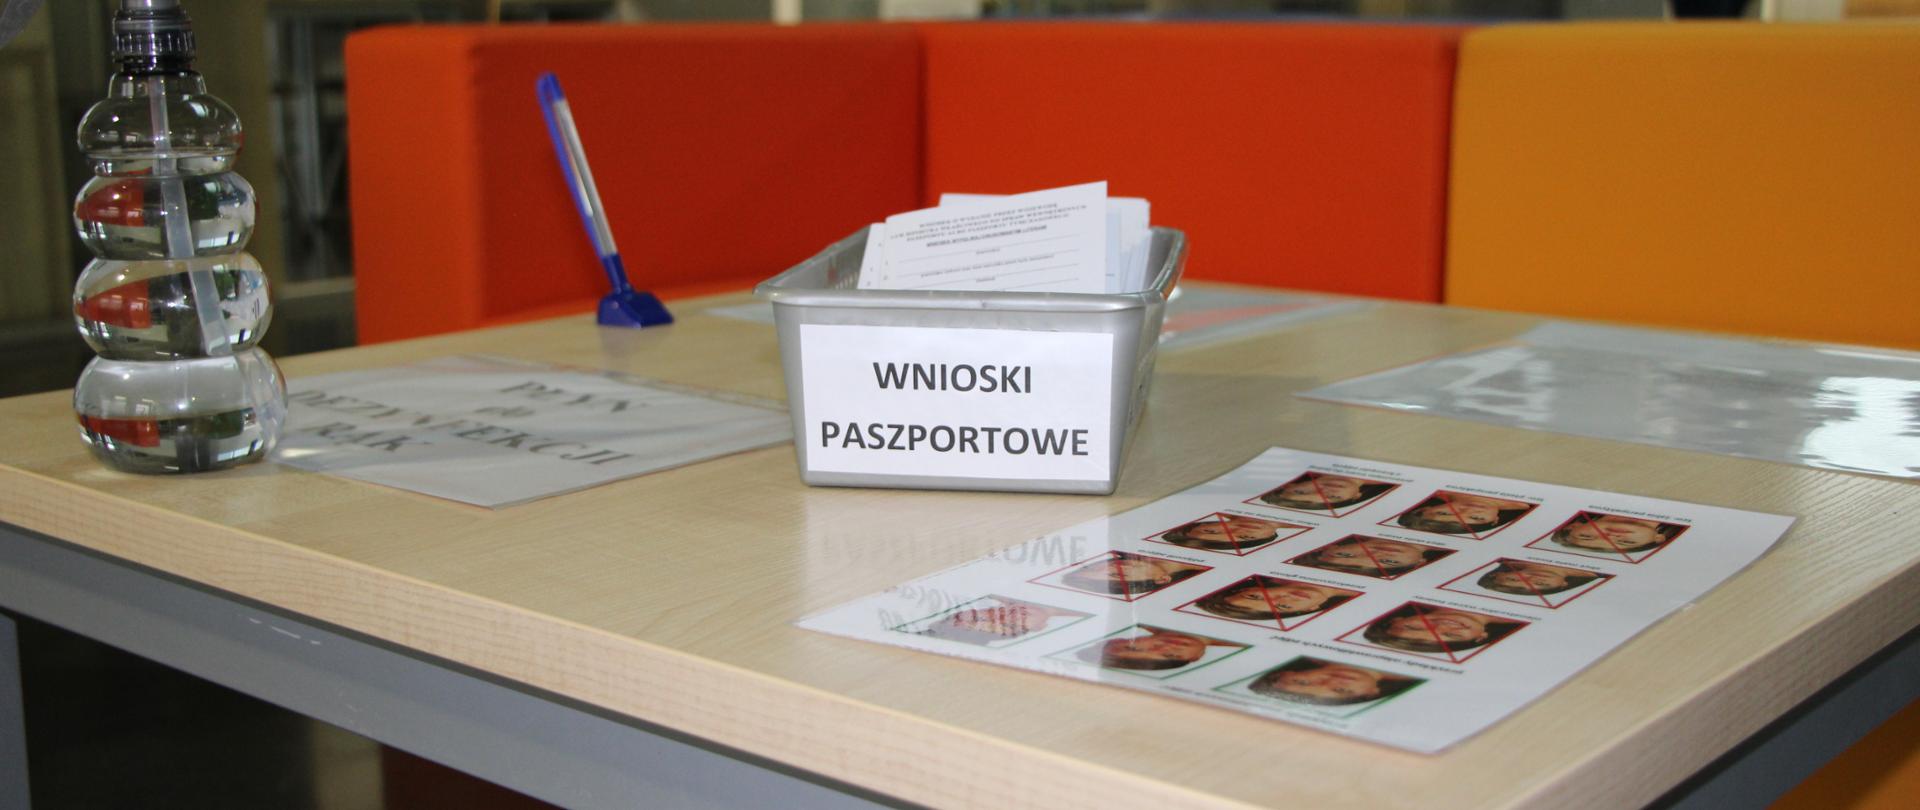 Stół, na którym leżą wnioski paszportowe, długopis, zdjęcia oraz płyn do dezynfekcji rąk